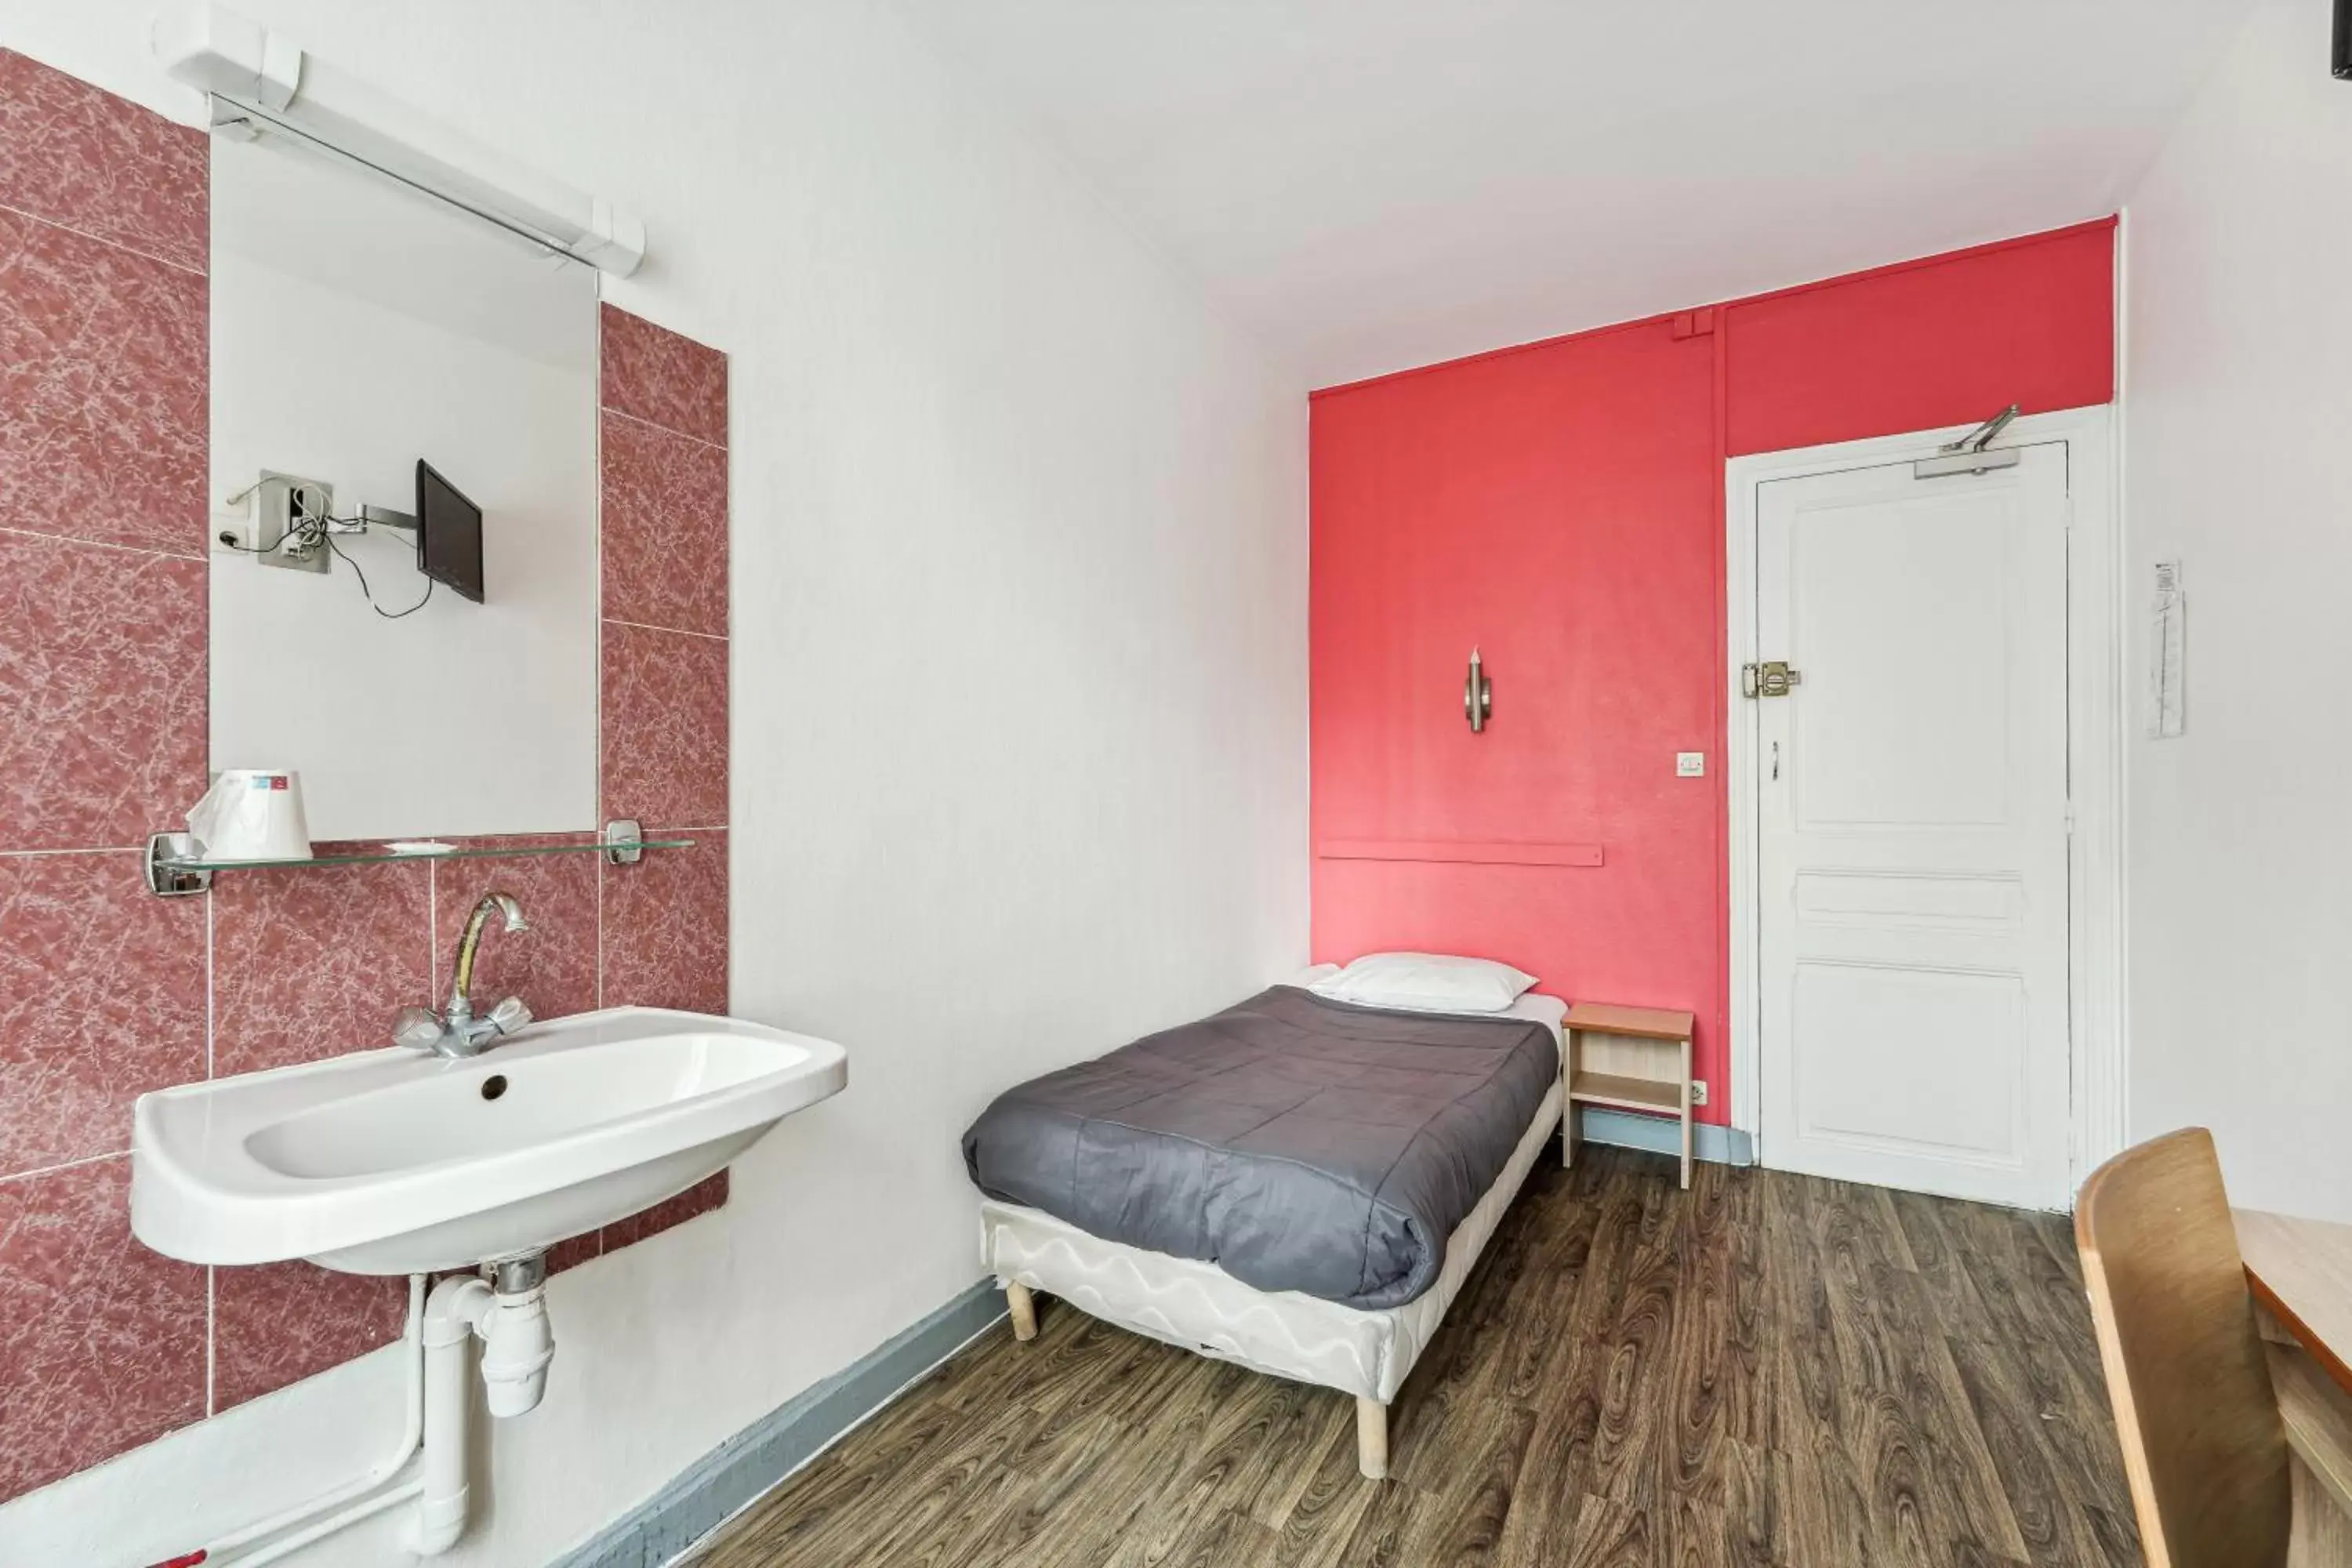 Bedroom, Bathroom in Hotel Tolbiac